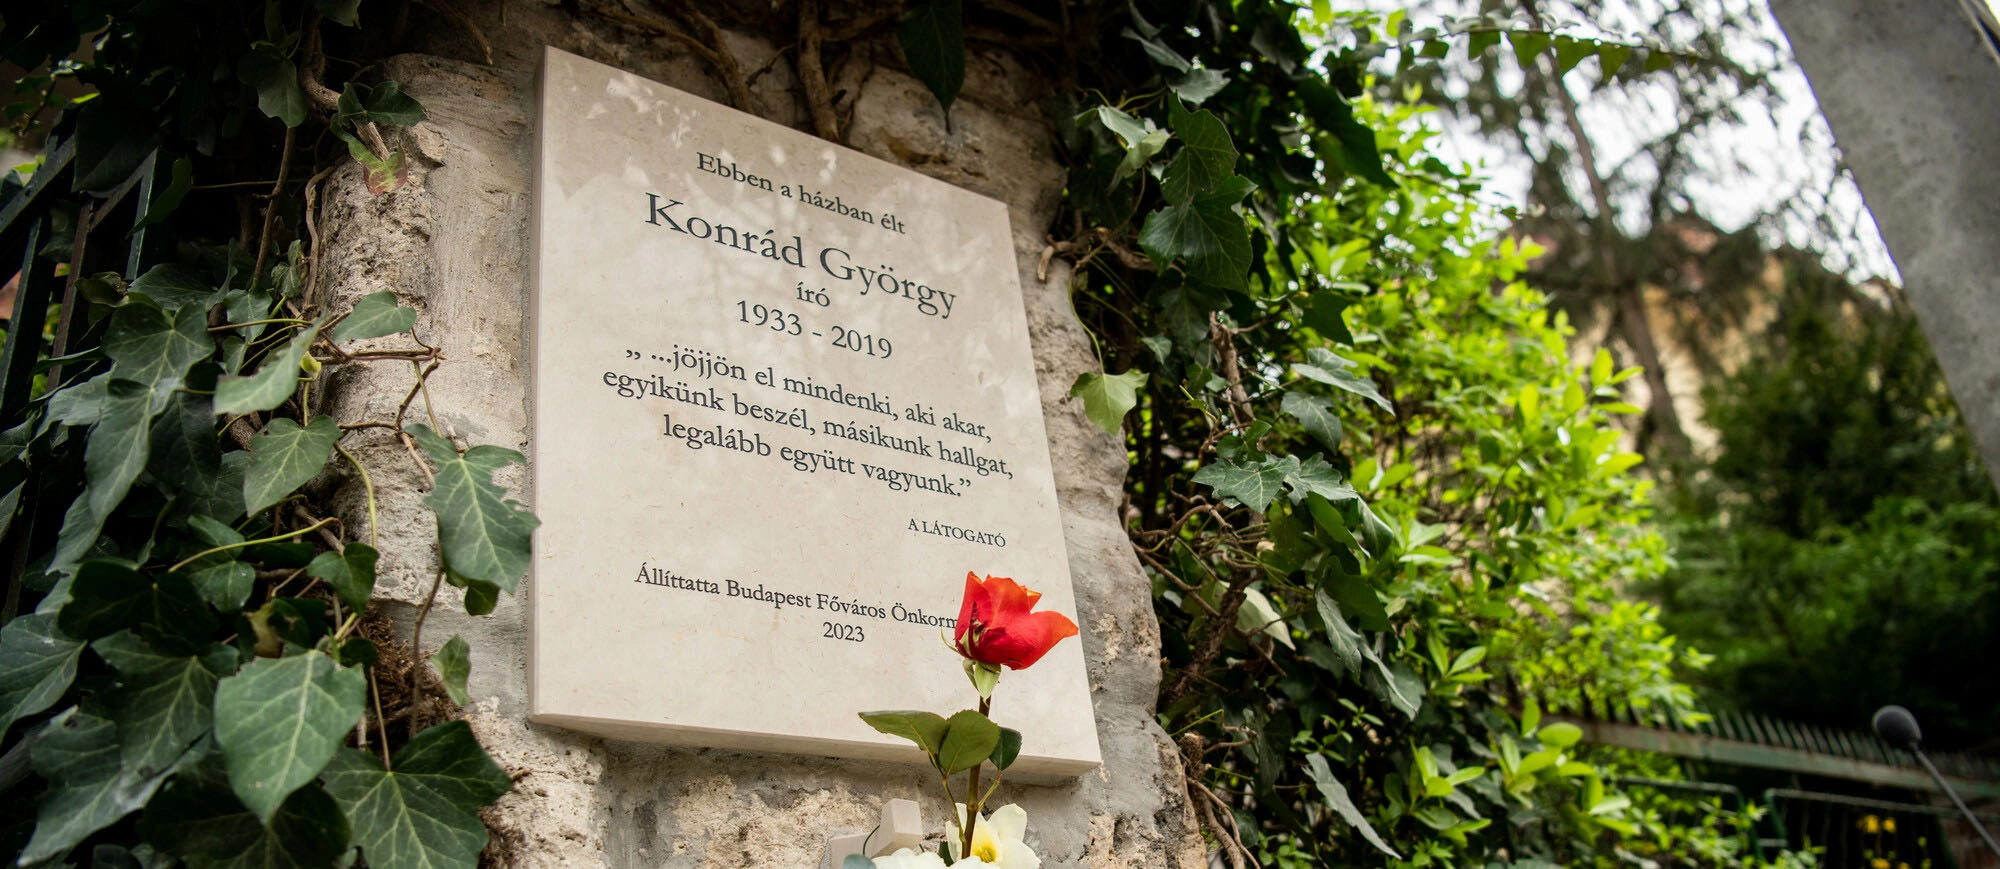 Emléktáblát kapott Konrád György Pasaréten